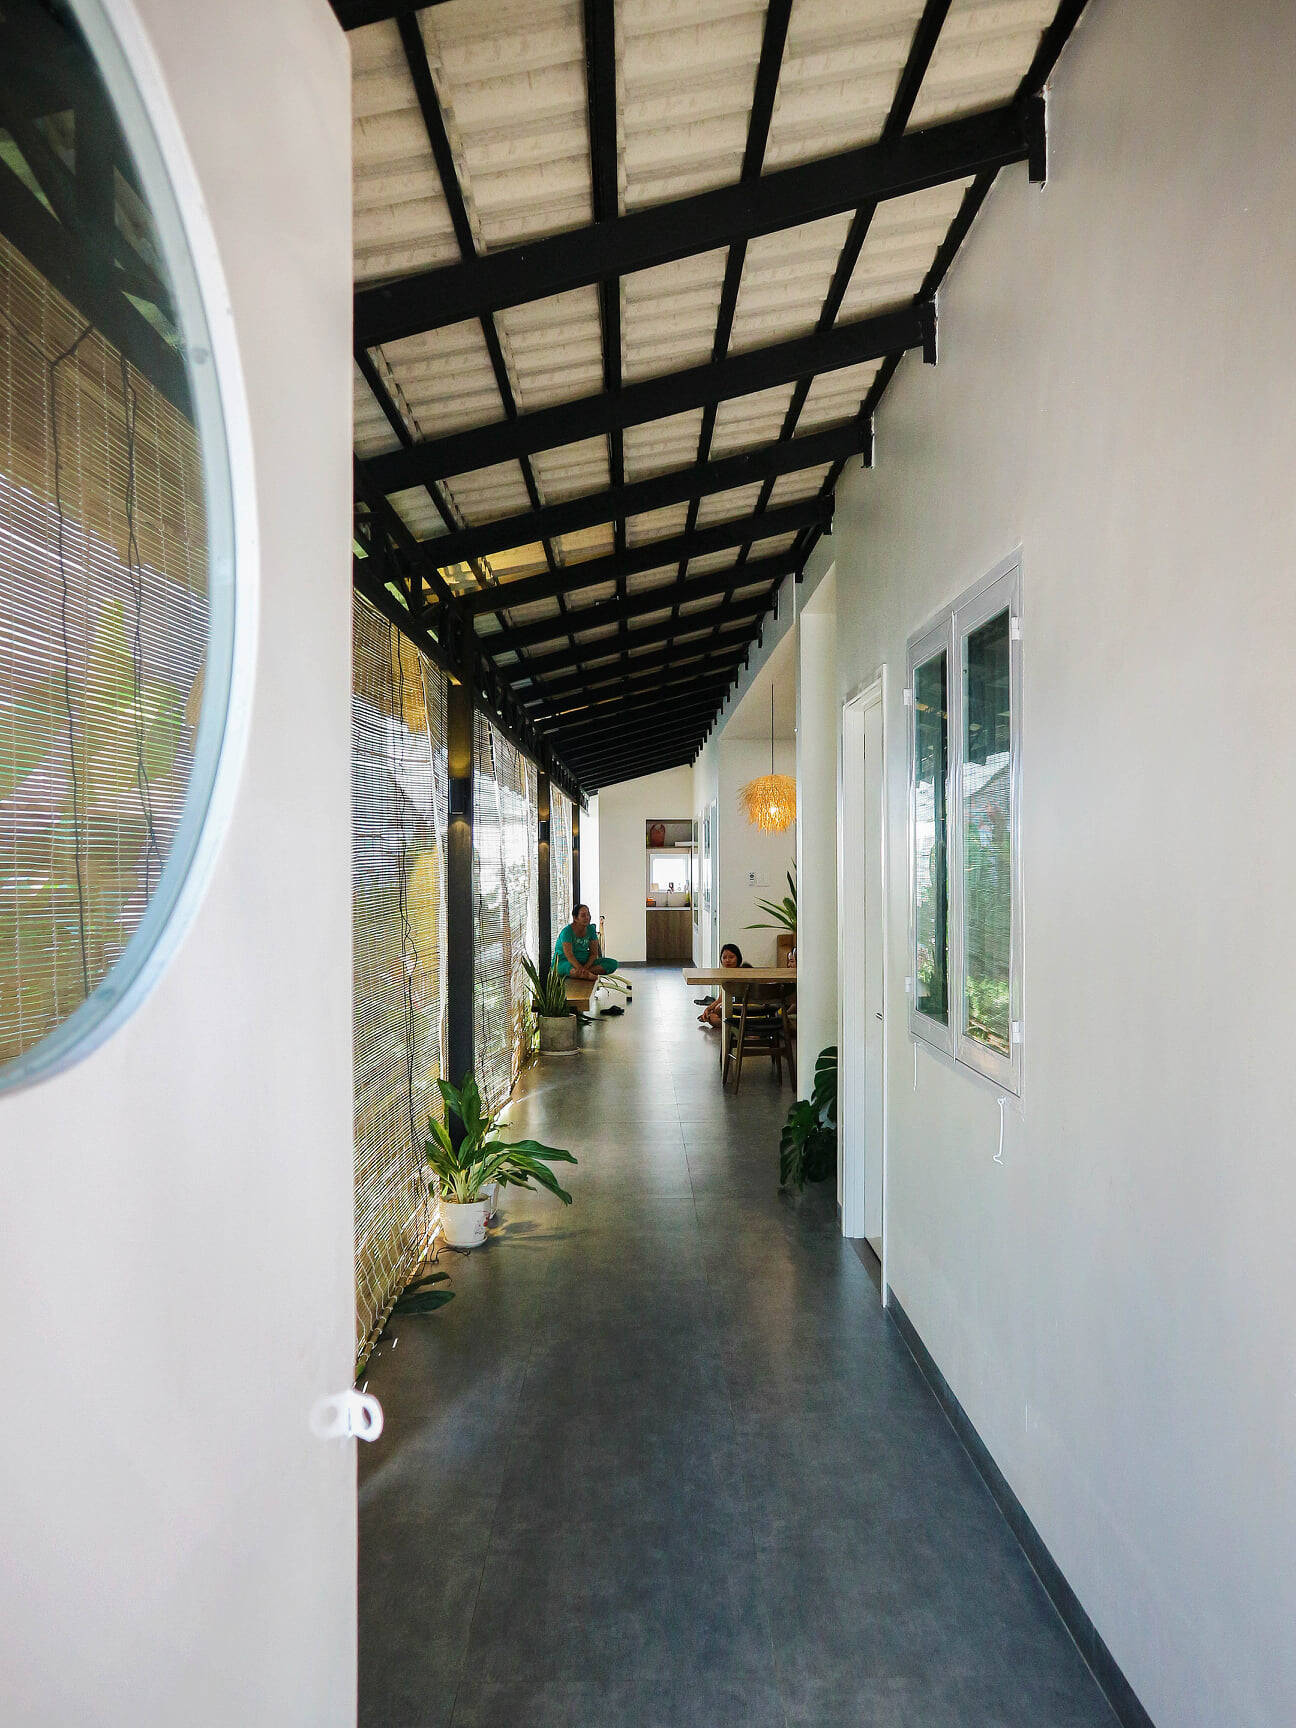 Nhà 7,5x30 ở ngoại ô Tây Ninh, thiết kế mở và “ít cửa” để luôn thoáng đãng, gần  gũi với thiên nhiên